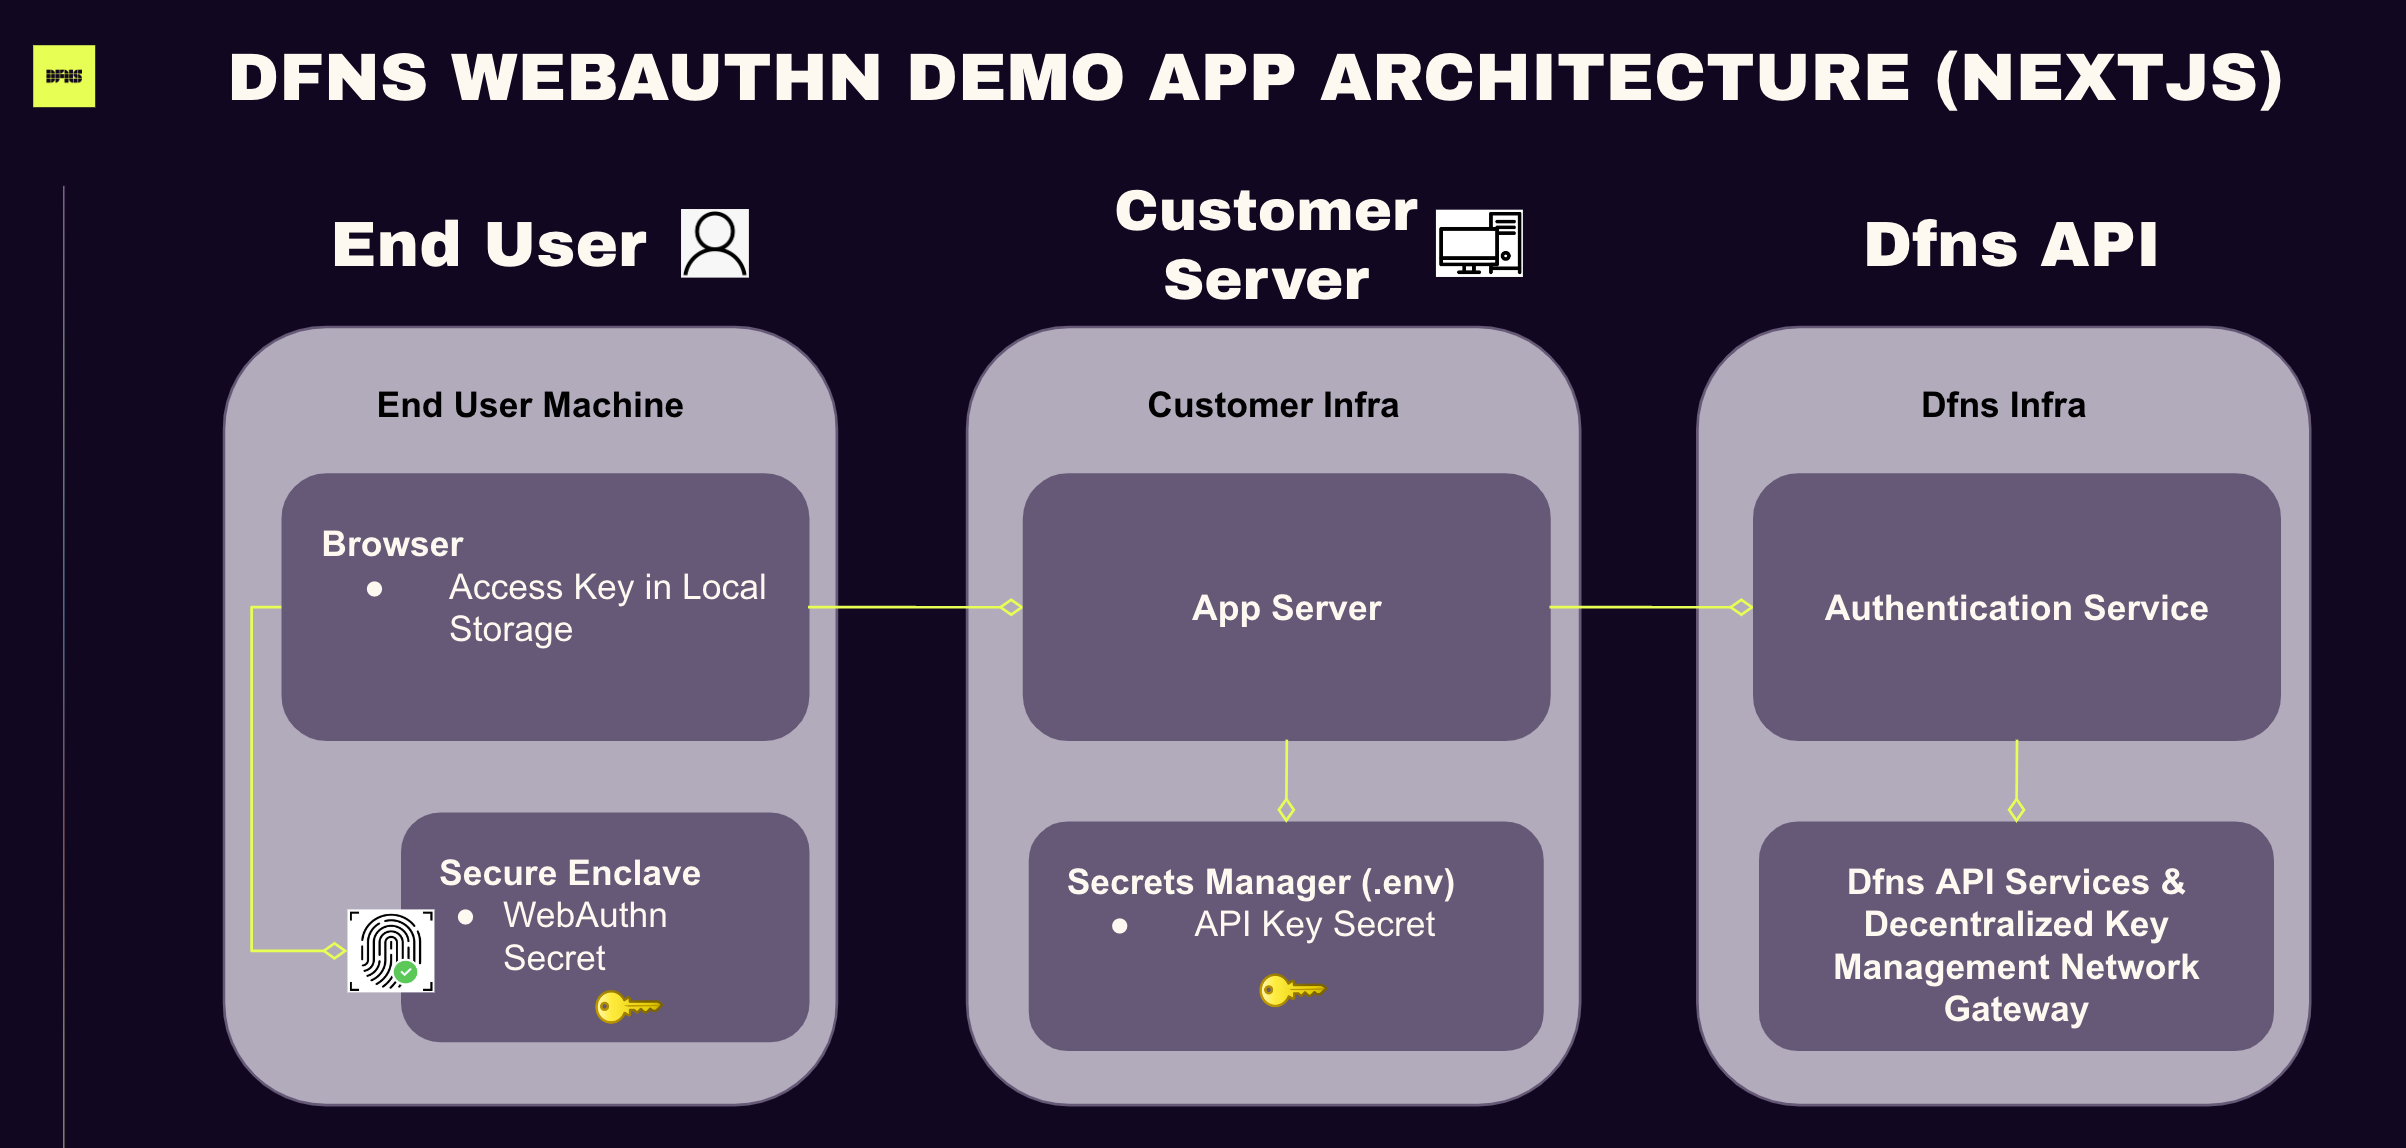 Demo App Architecture